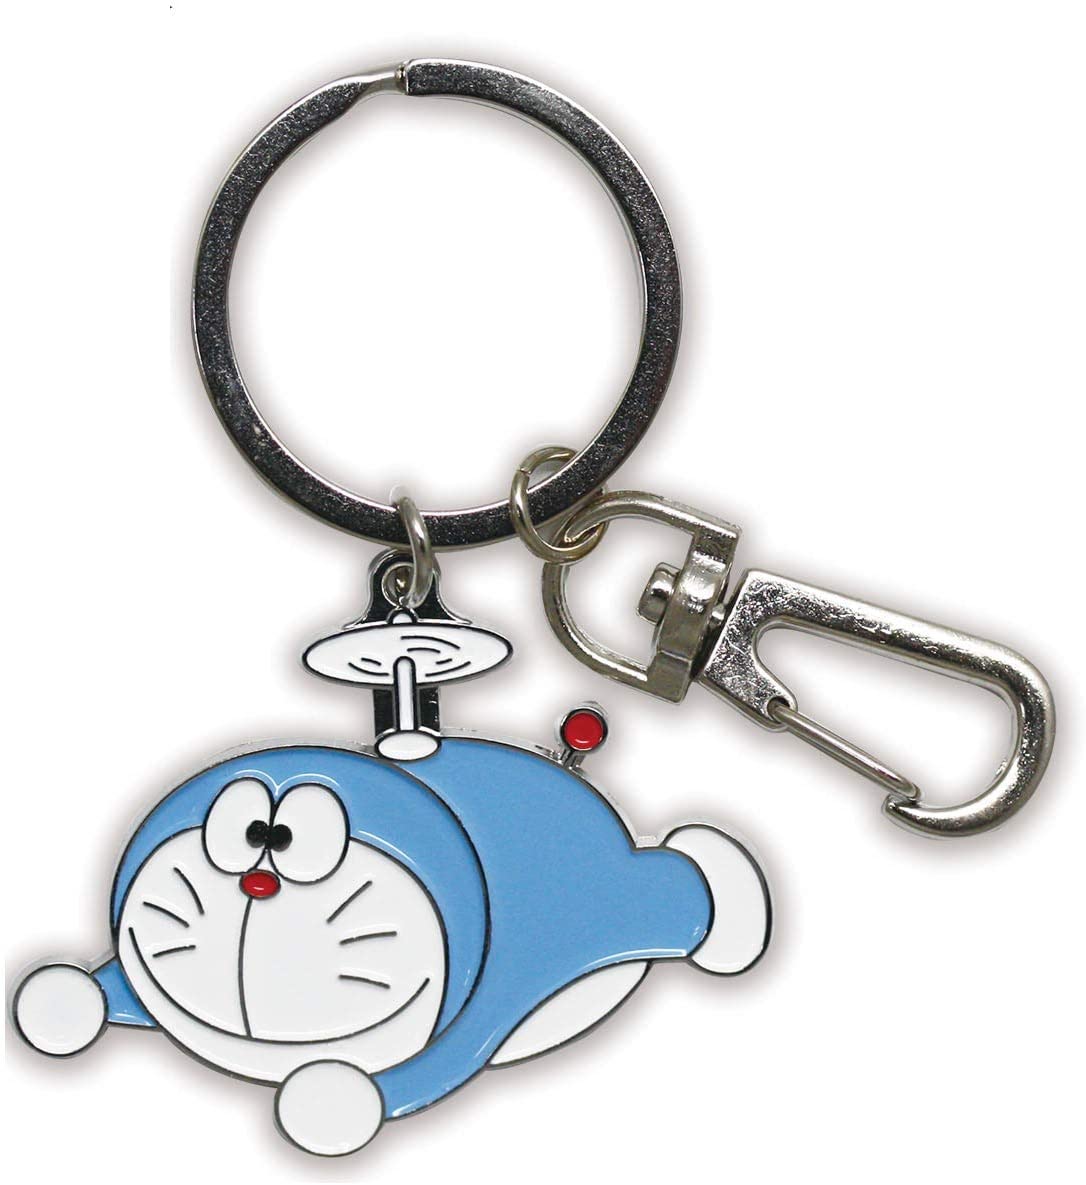 楽天市場 ドラえもん I M Doraemon キーリング 初期ドラえもん Id Kr011 在庫あり キーホルダー アニメグッズ かわいい キーリング おしゃれ どらえもん スマホガラスのフューチャモバイル